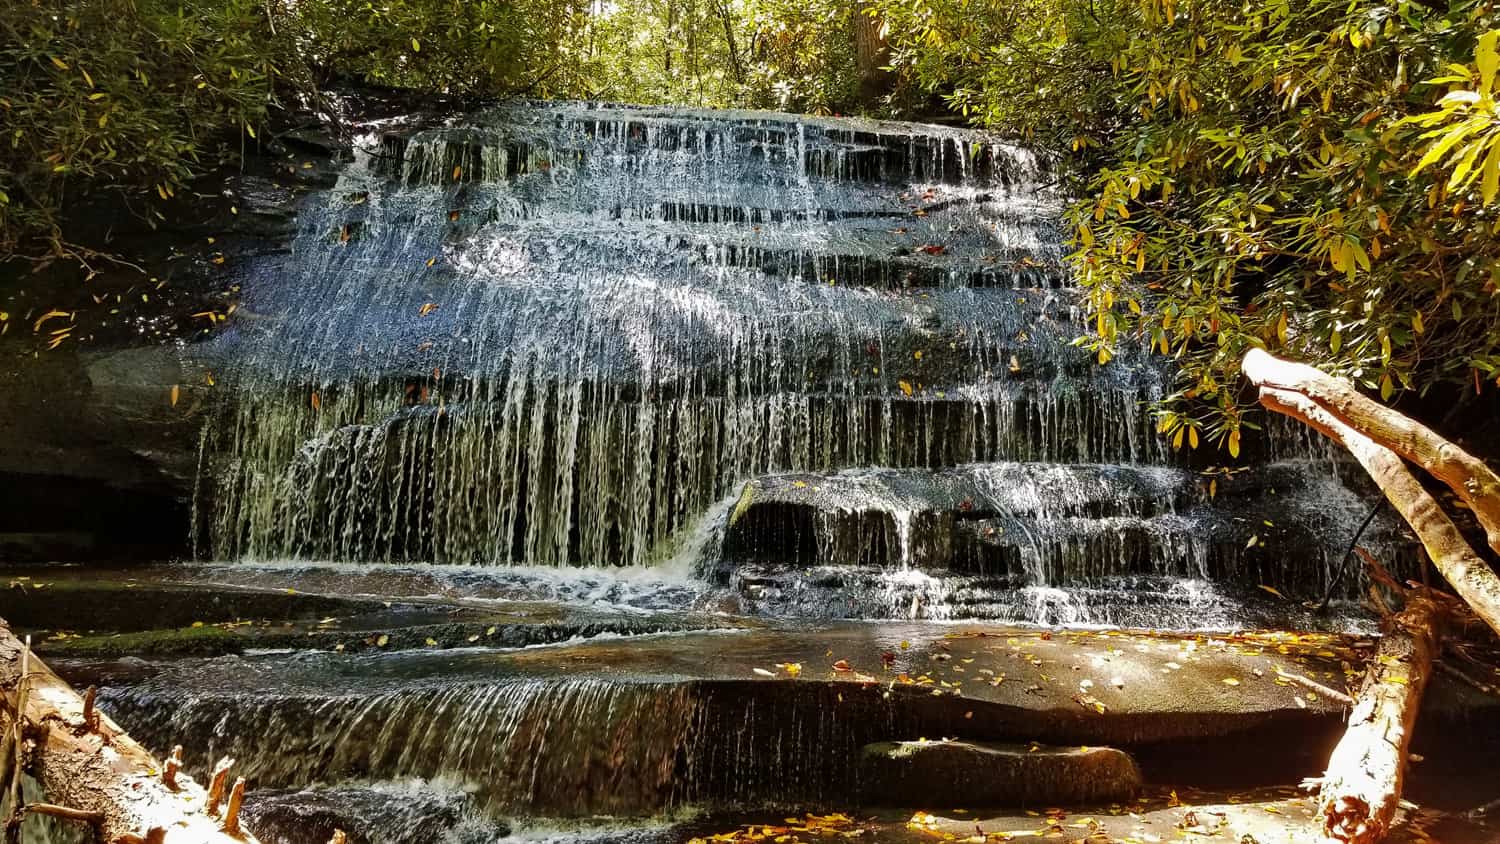 Grogan Creek Falls in Pisgah National Forest